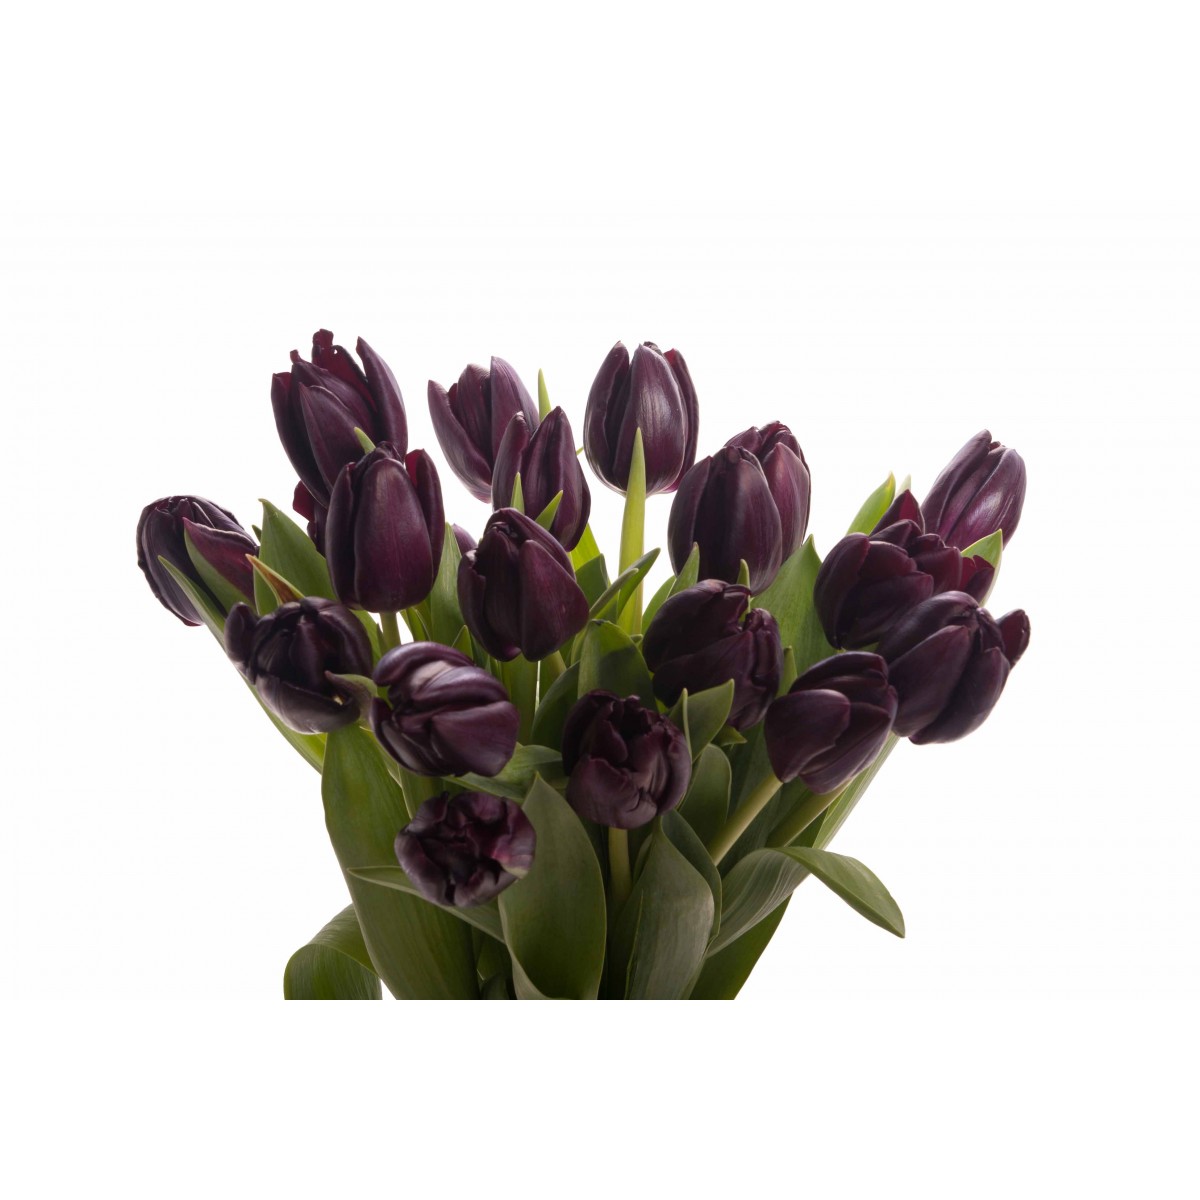 Tuyển tập hình ảnh hoa tulip đen đẹp nhất – Loài hoa chân thành, thủy chung - [Kích thước hình ảnh: 1200x1200 px]